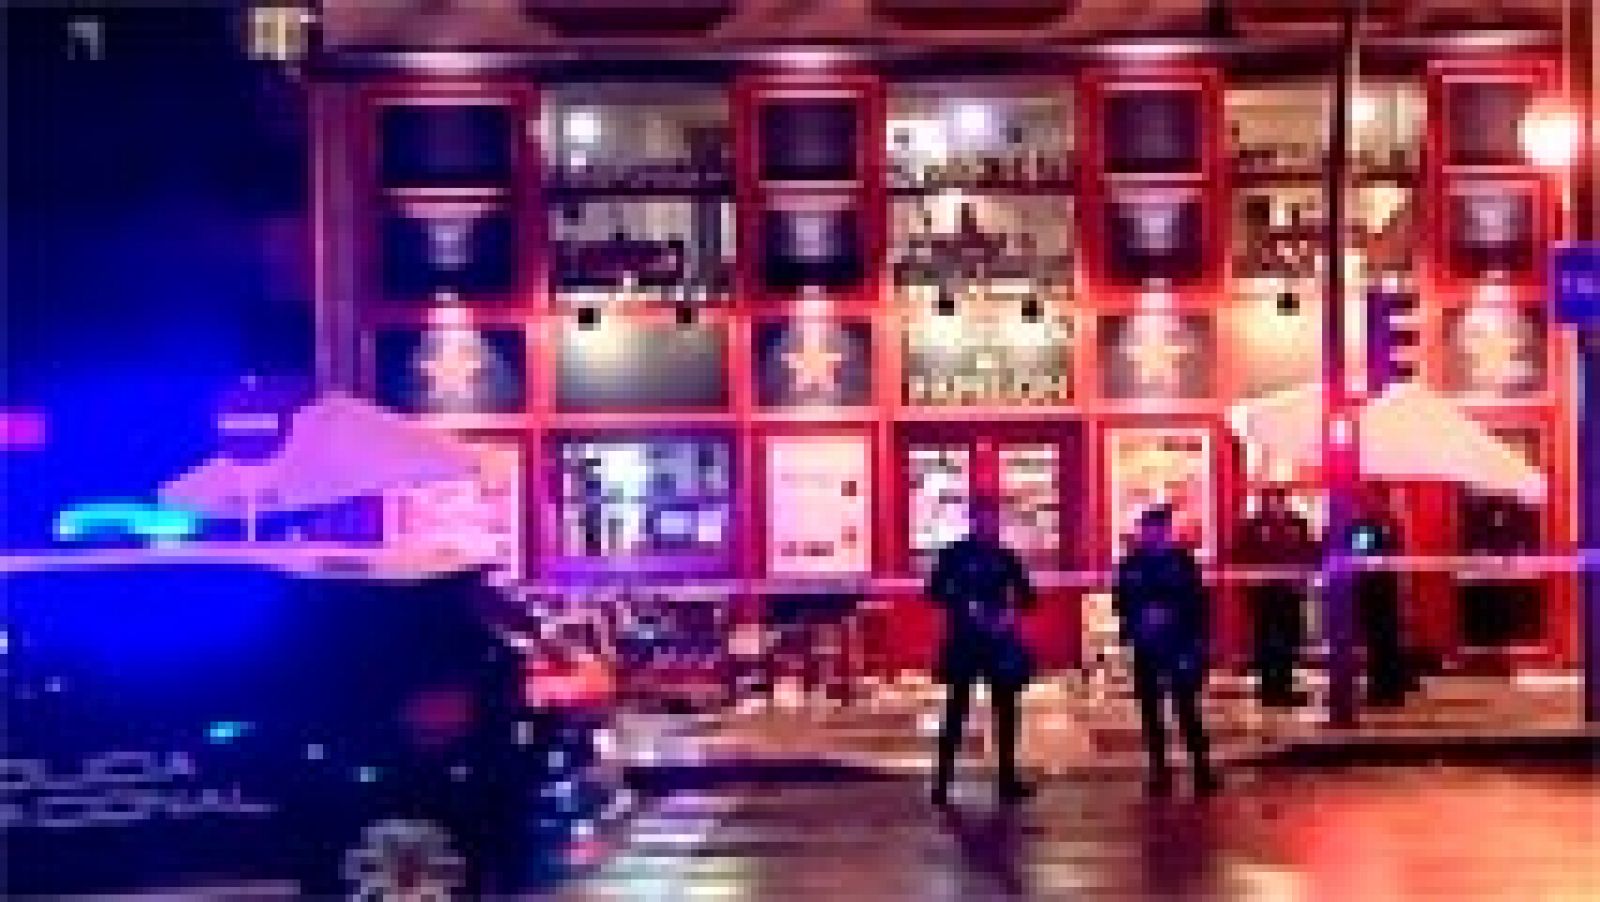 La Policía tiene identificados a algunos de los ultras del Sevilla que presuntamente atacaron anoche a un grupo de seguidores del Juventus, mientras "cenaban tranquilamente" en un bar, y prevé practicar detenciones pronto, según dijo la subdelegada del Gobierno en Sevilla, Felisa Panadero.